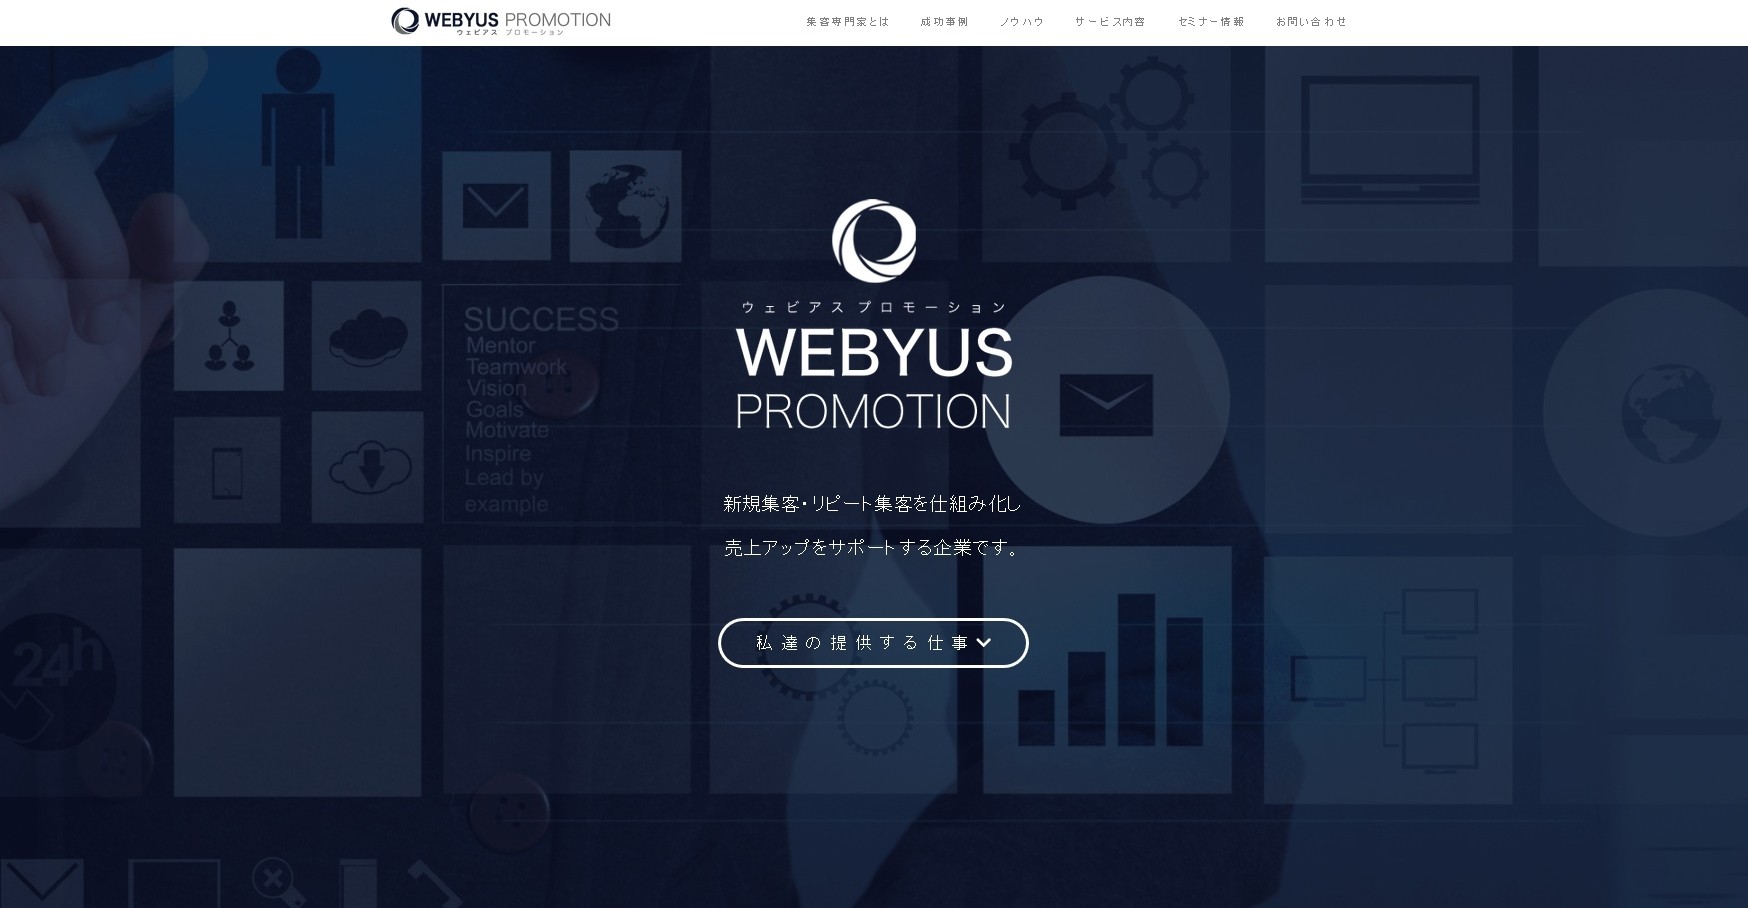 WEBYUS PROMOTION株式会社のWEBYUS PROMOTION株式会社サービス